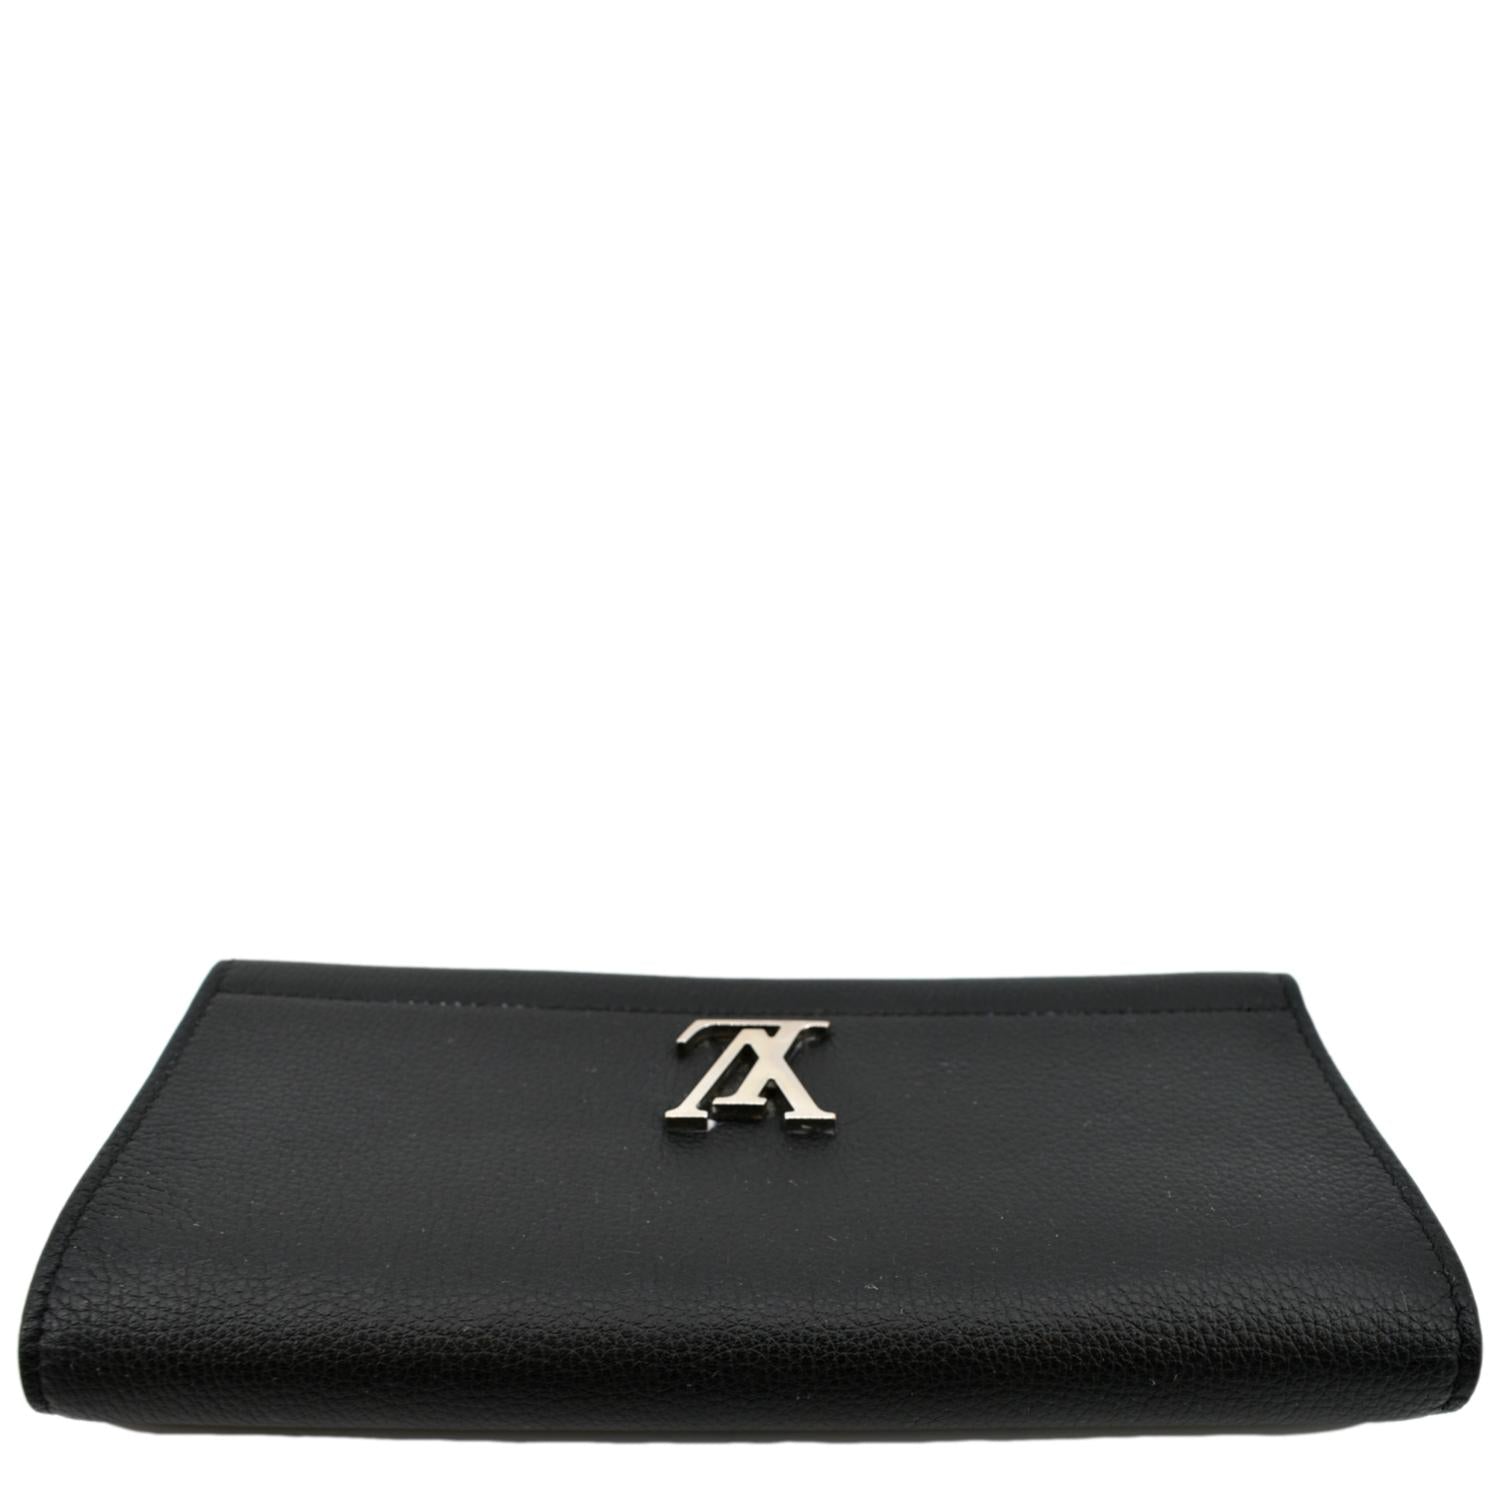 Shop Louis Vuitton LOCKME Plain Leather Folding Wallet Small